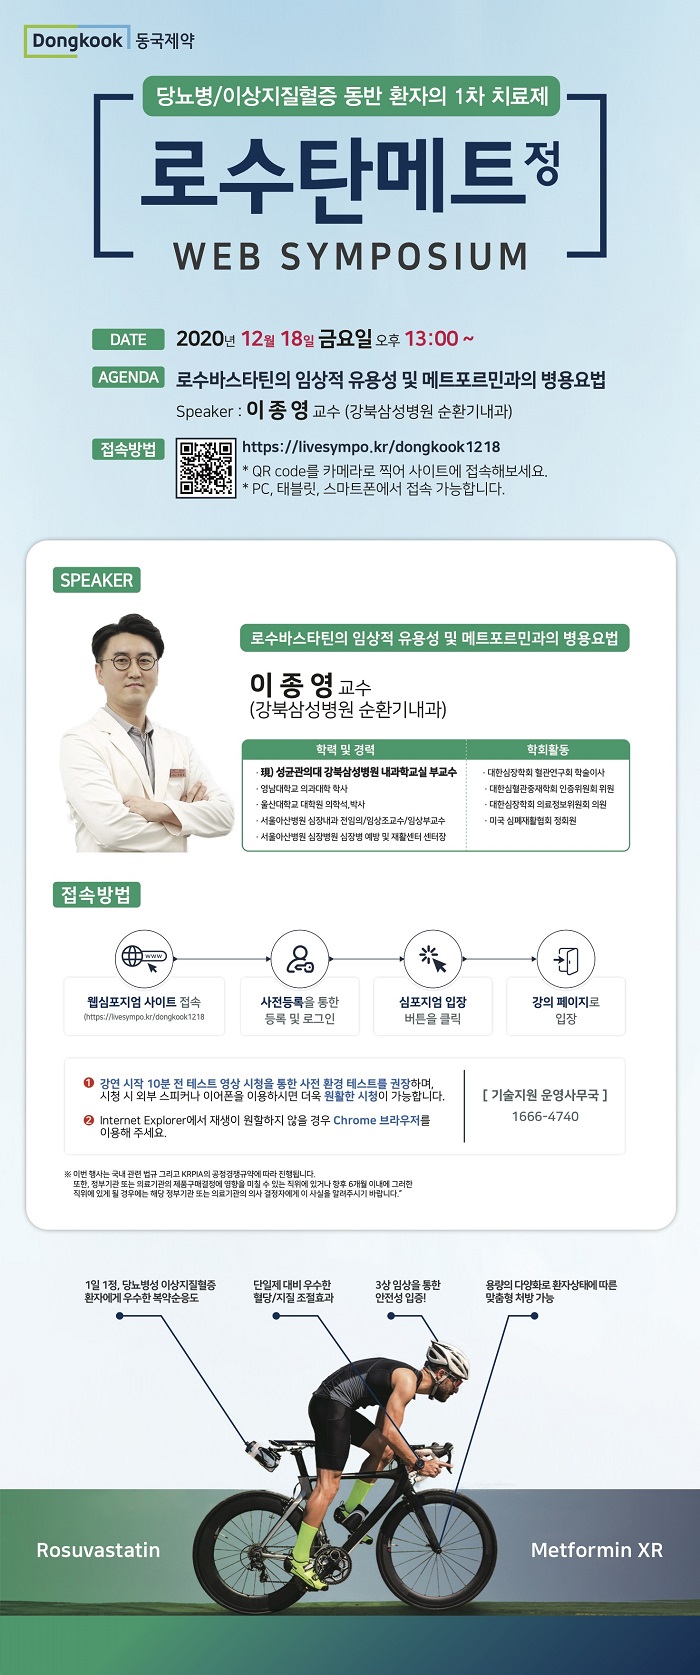 동국제약이 '로수탄메트'의 웹 심포지엄을 개최한다.